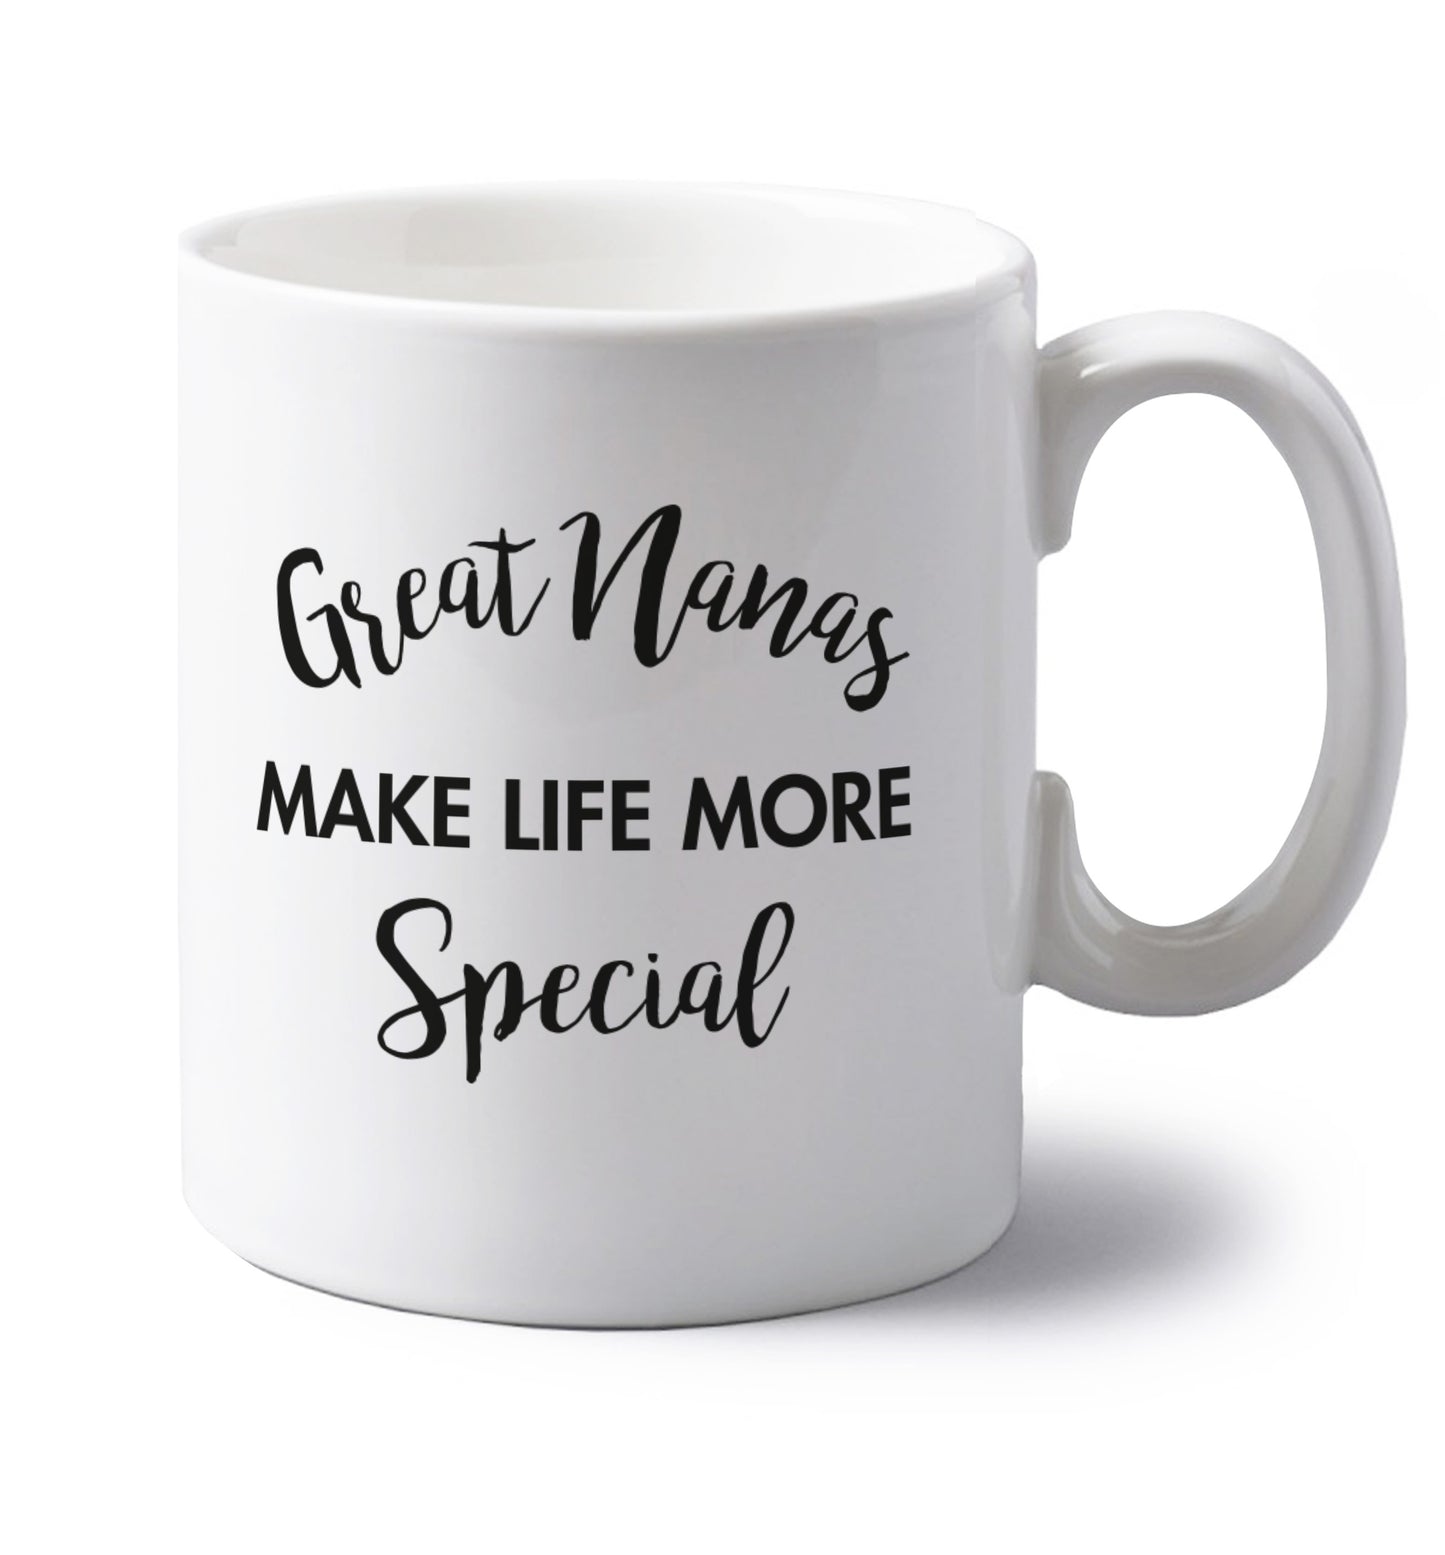 Great nanas make life more special left handed white ceramic mug 